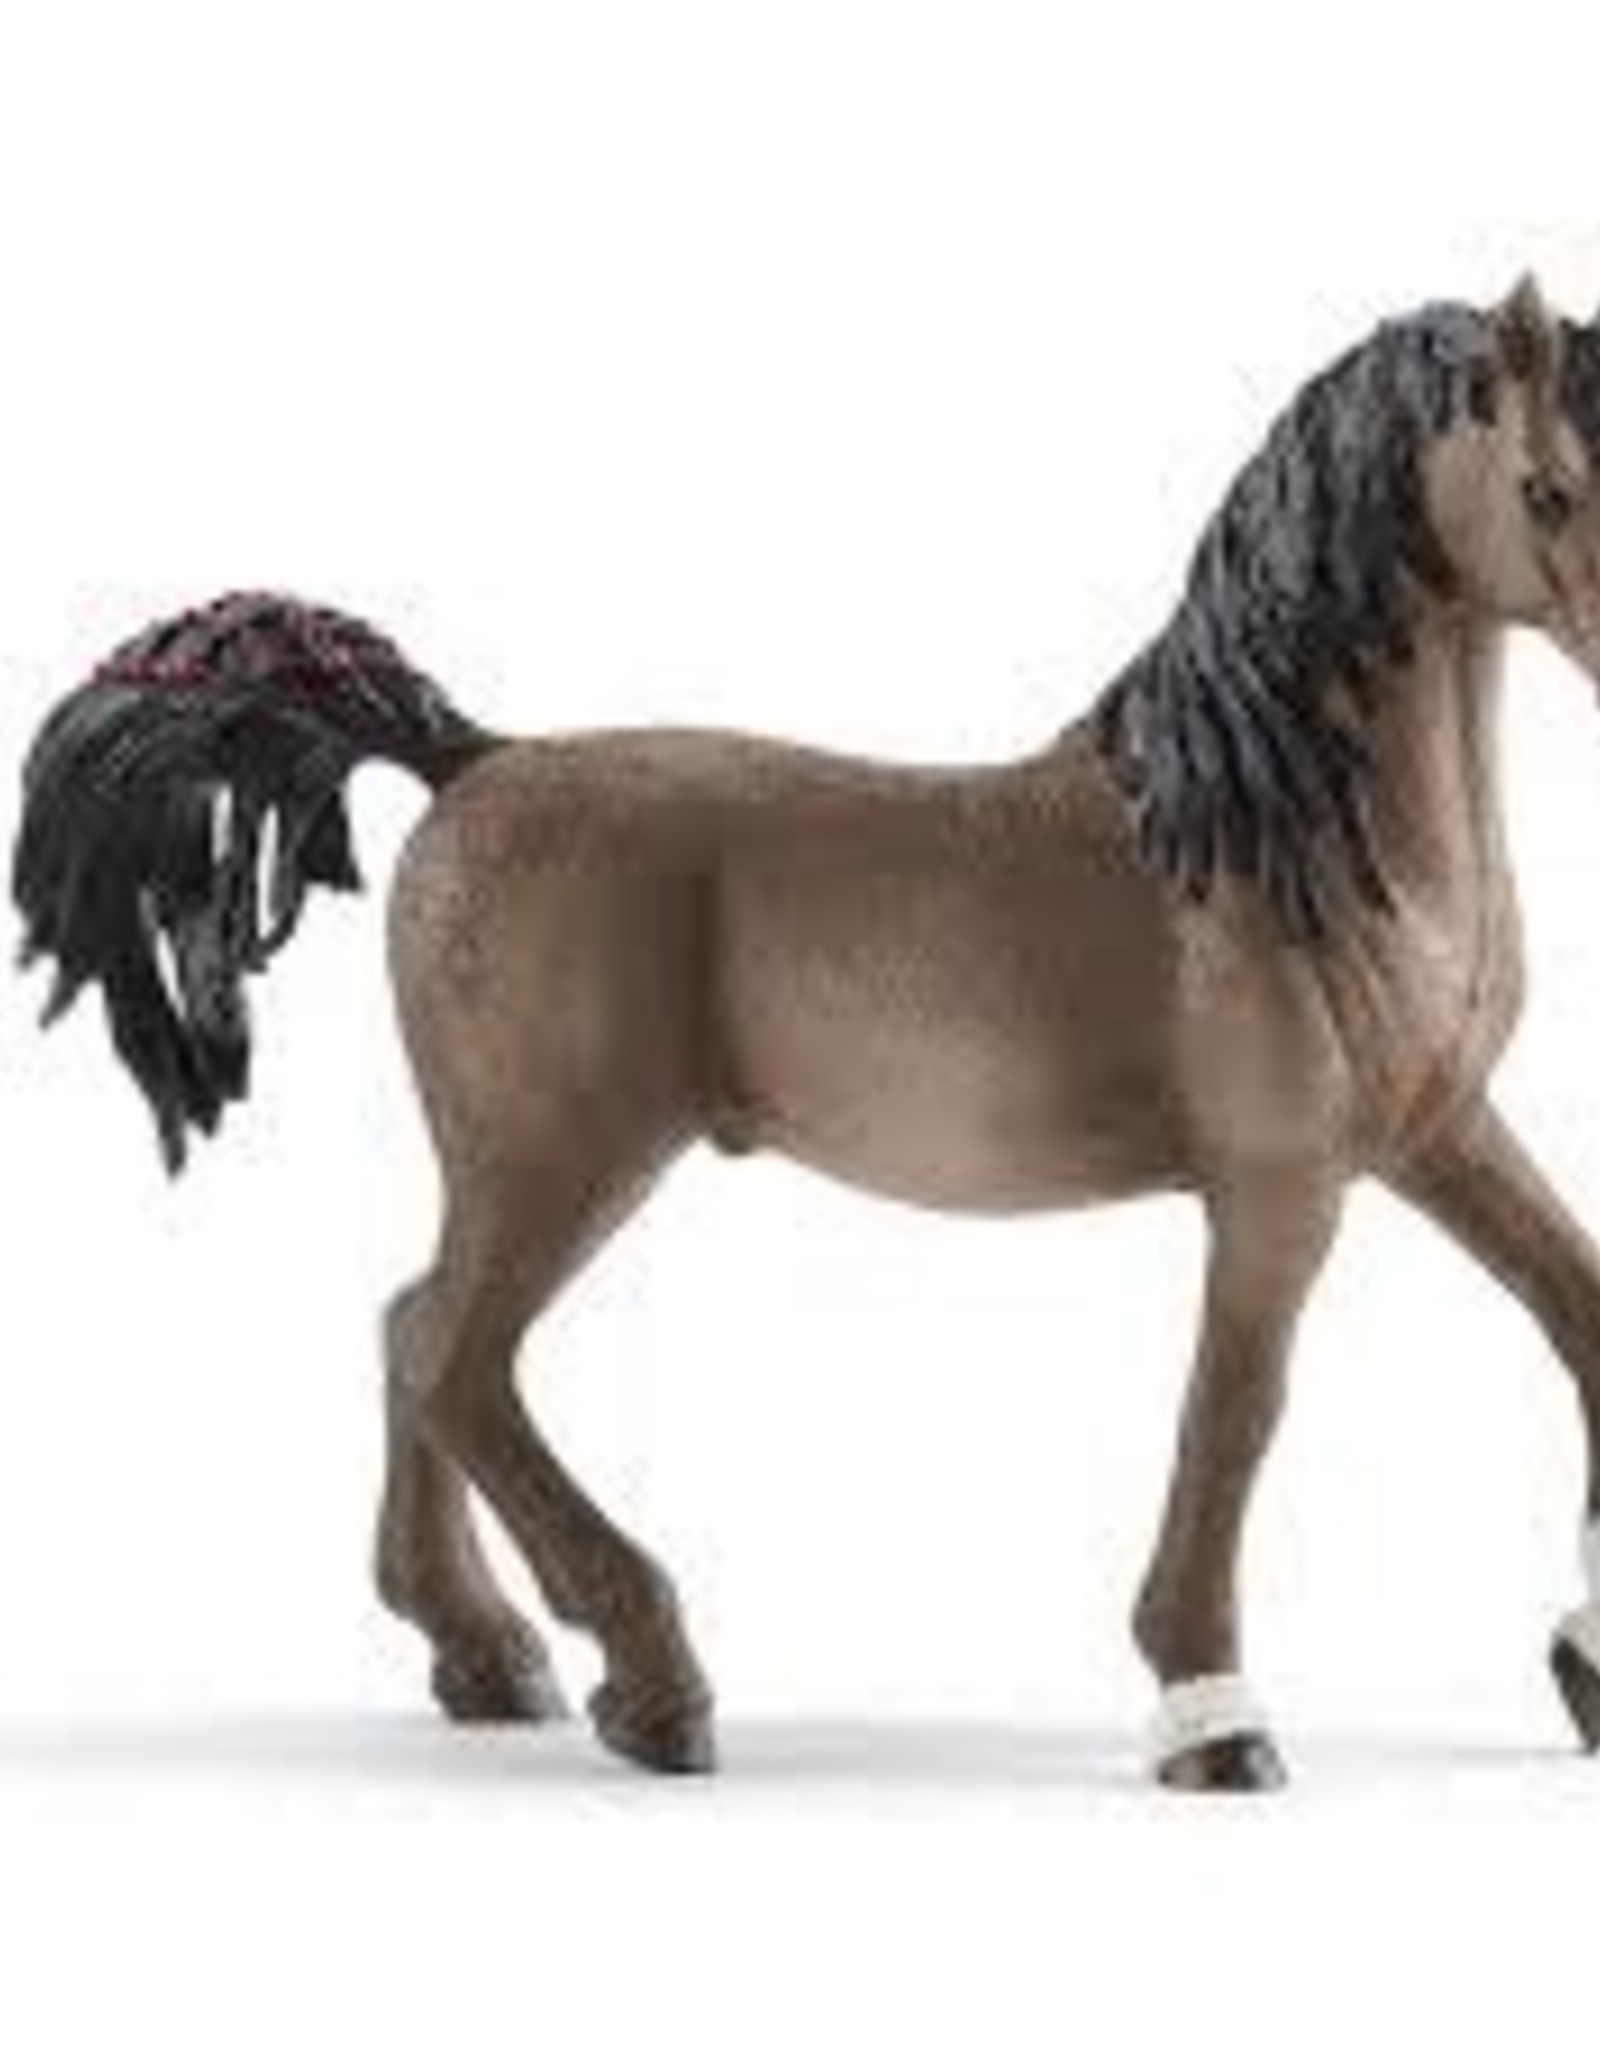 Schleich Arabian Stallion 13907